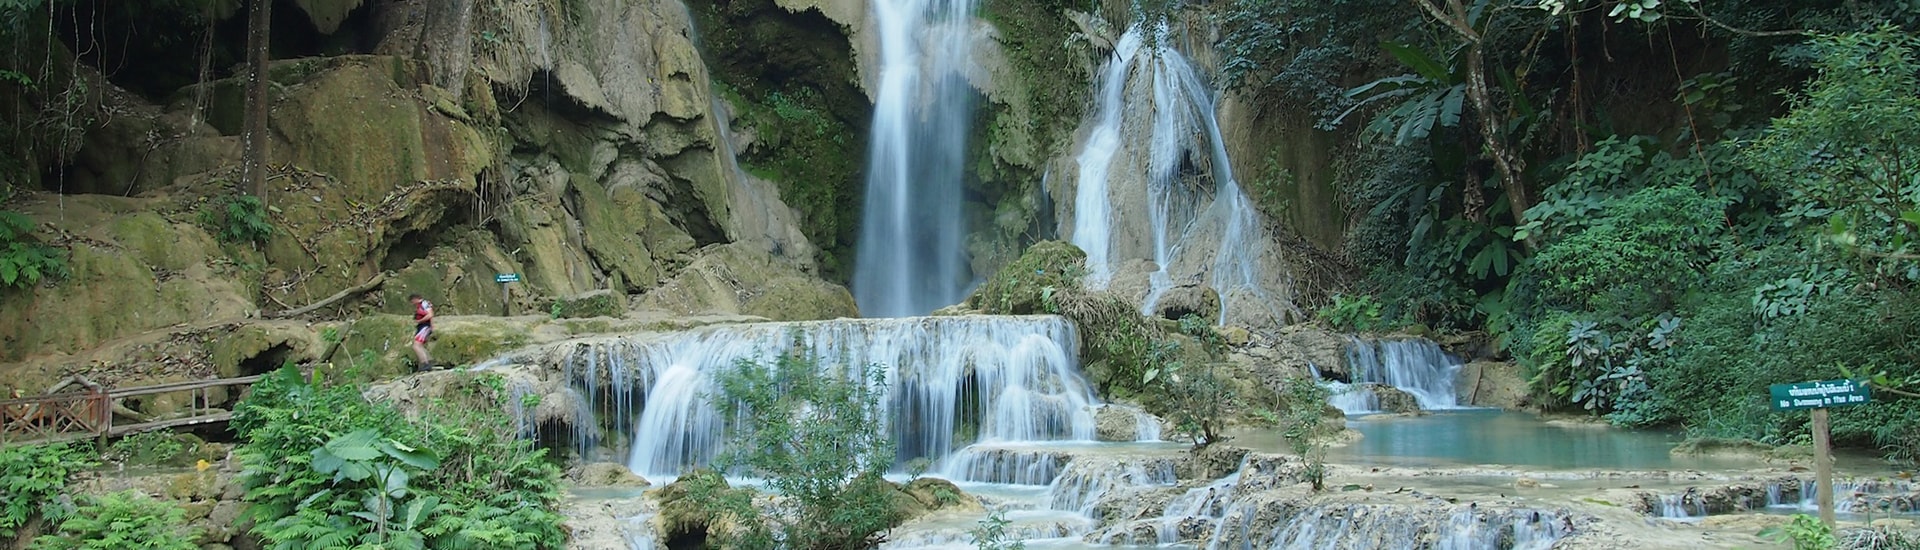 Khouangsi Waterfall Tour